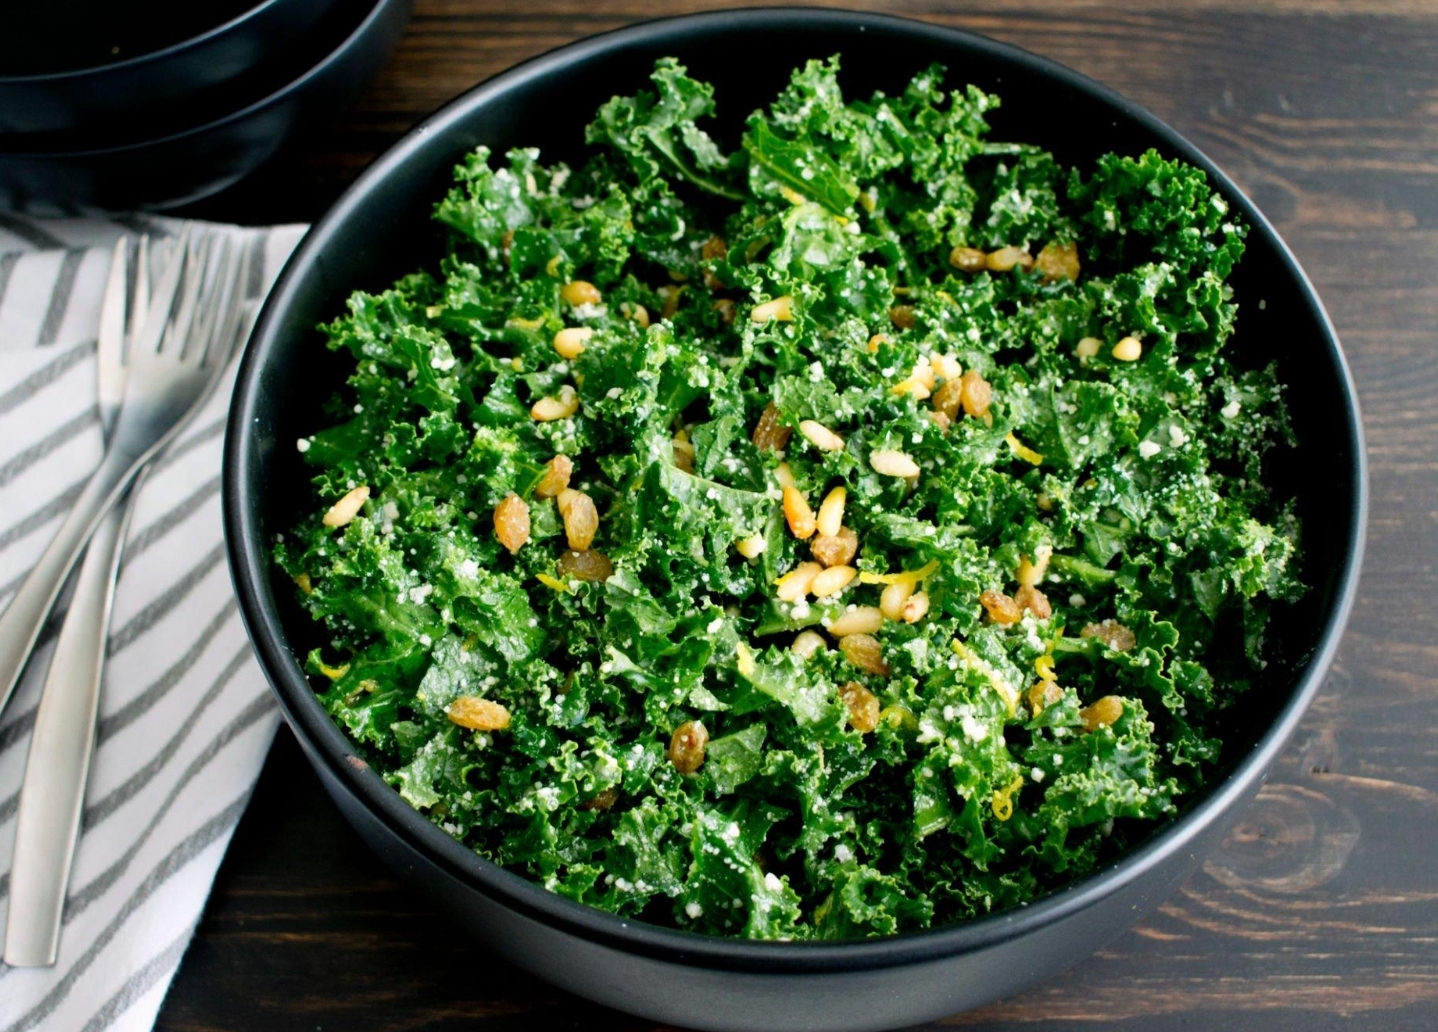 What Does Kale Crunch Salad Taste Like?